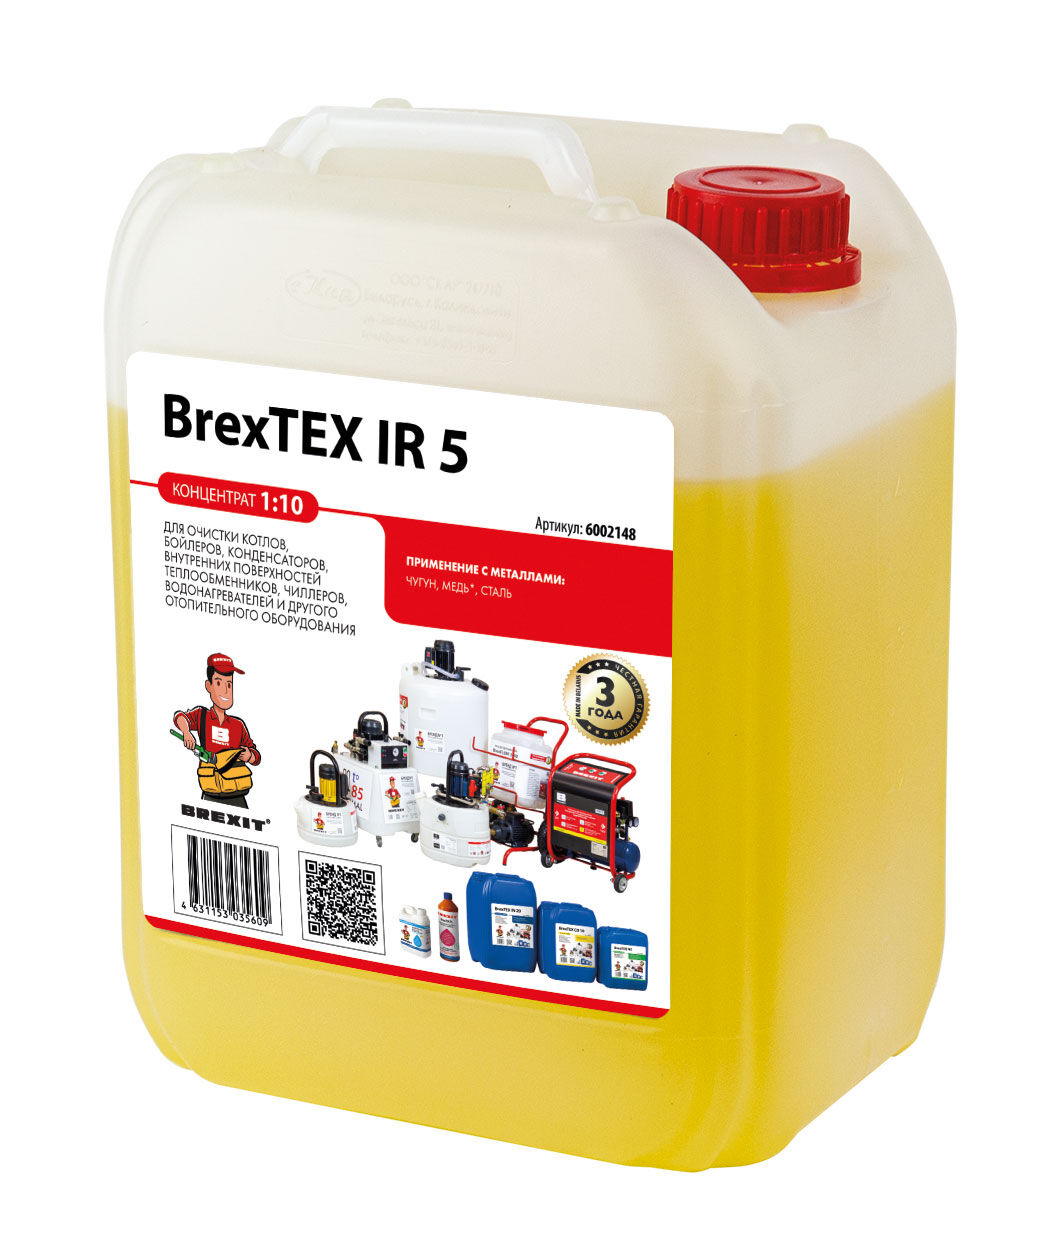 Реагент для очистки теплообменного и отопительного оборудования BrexTEX IR 5 brexit